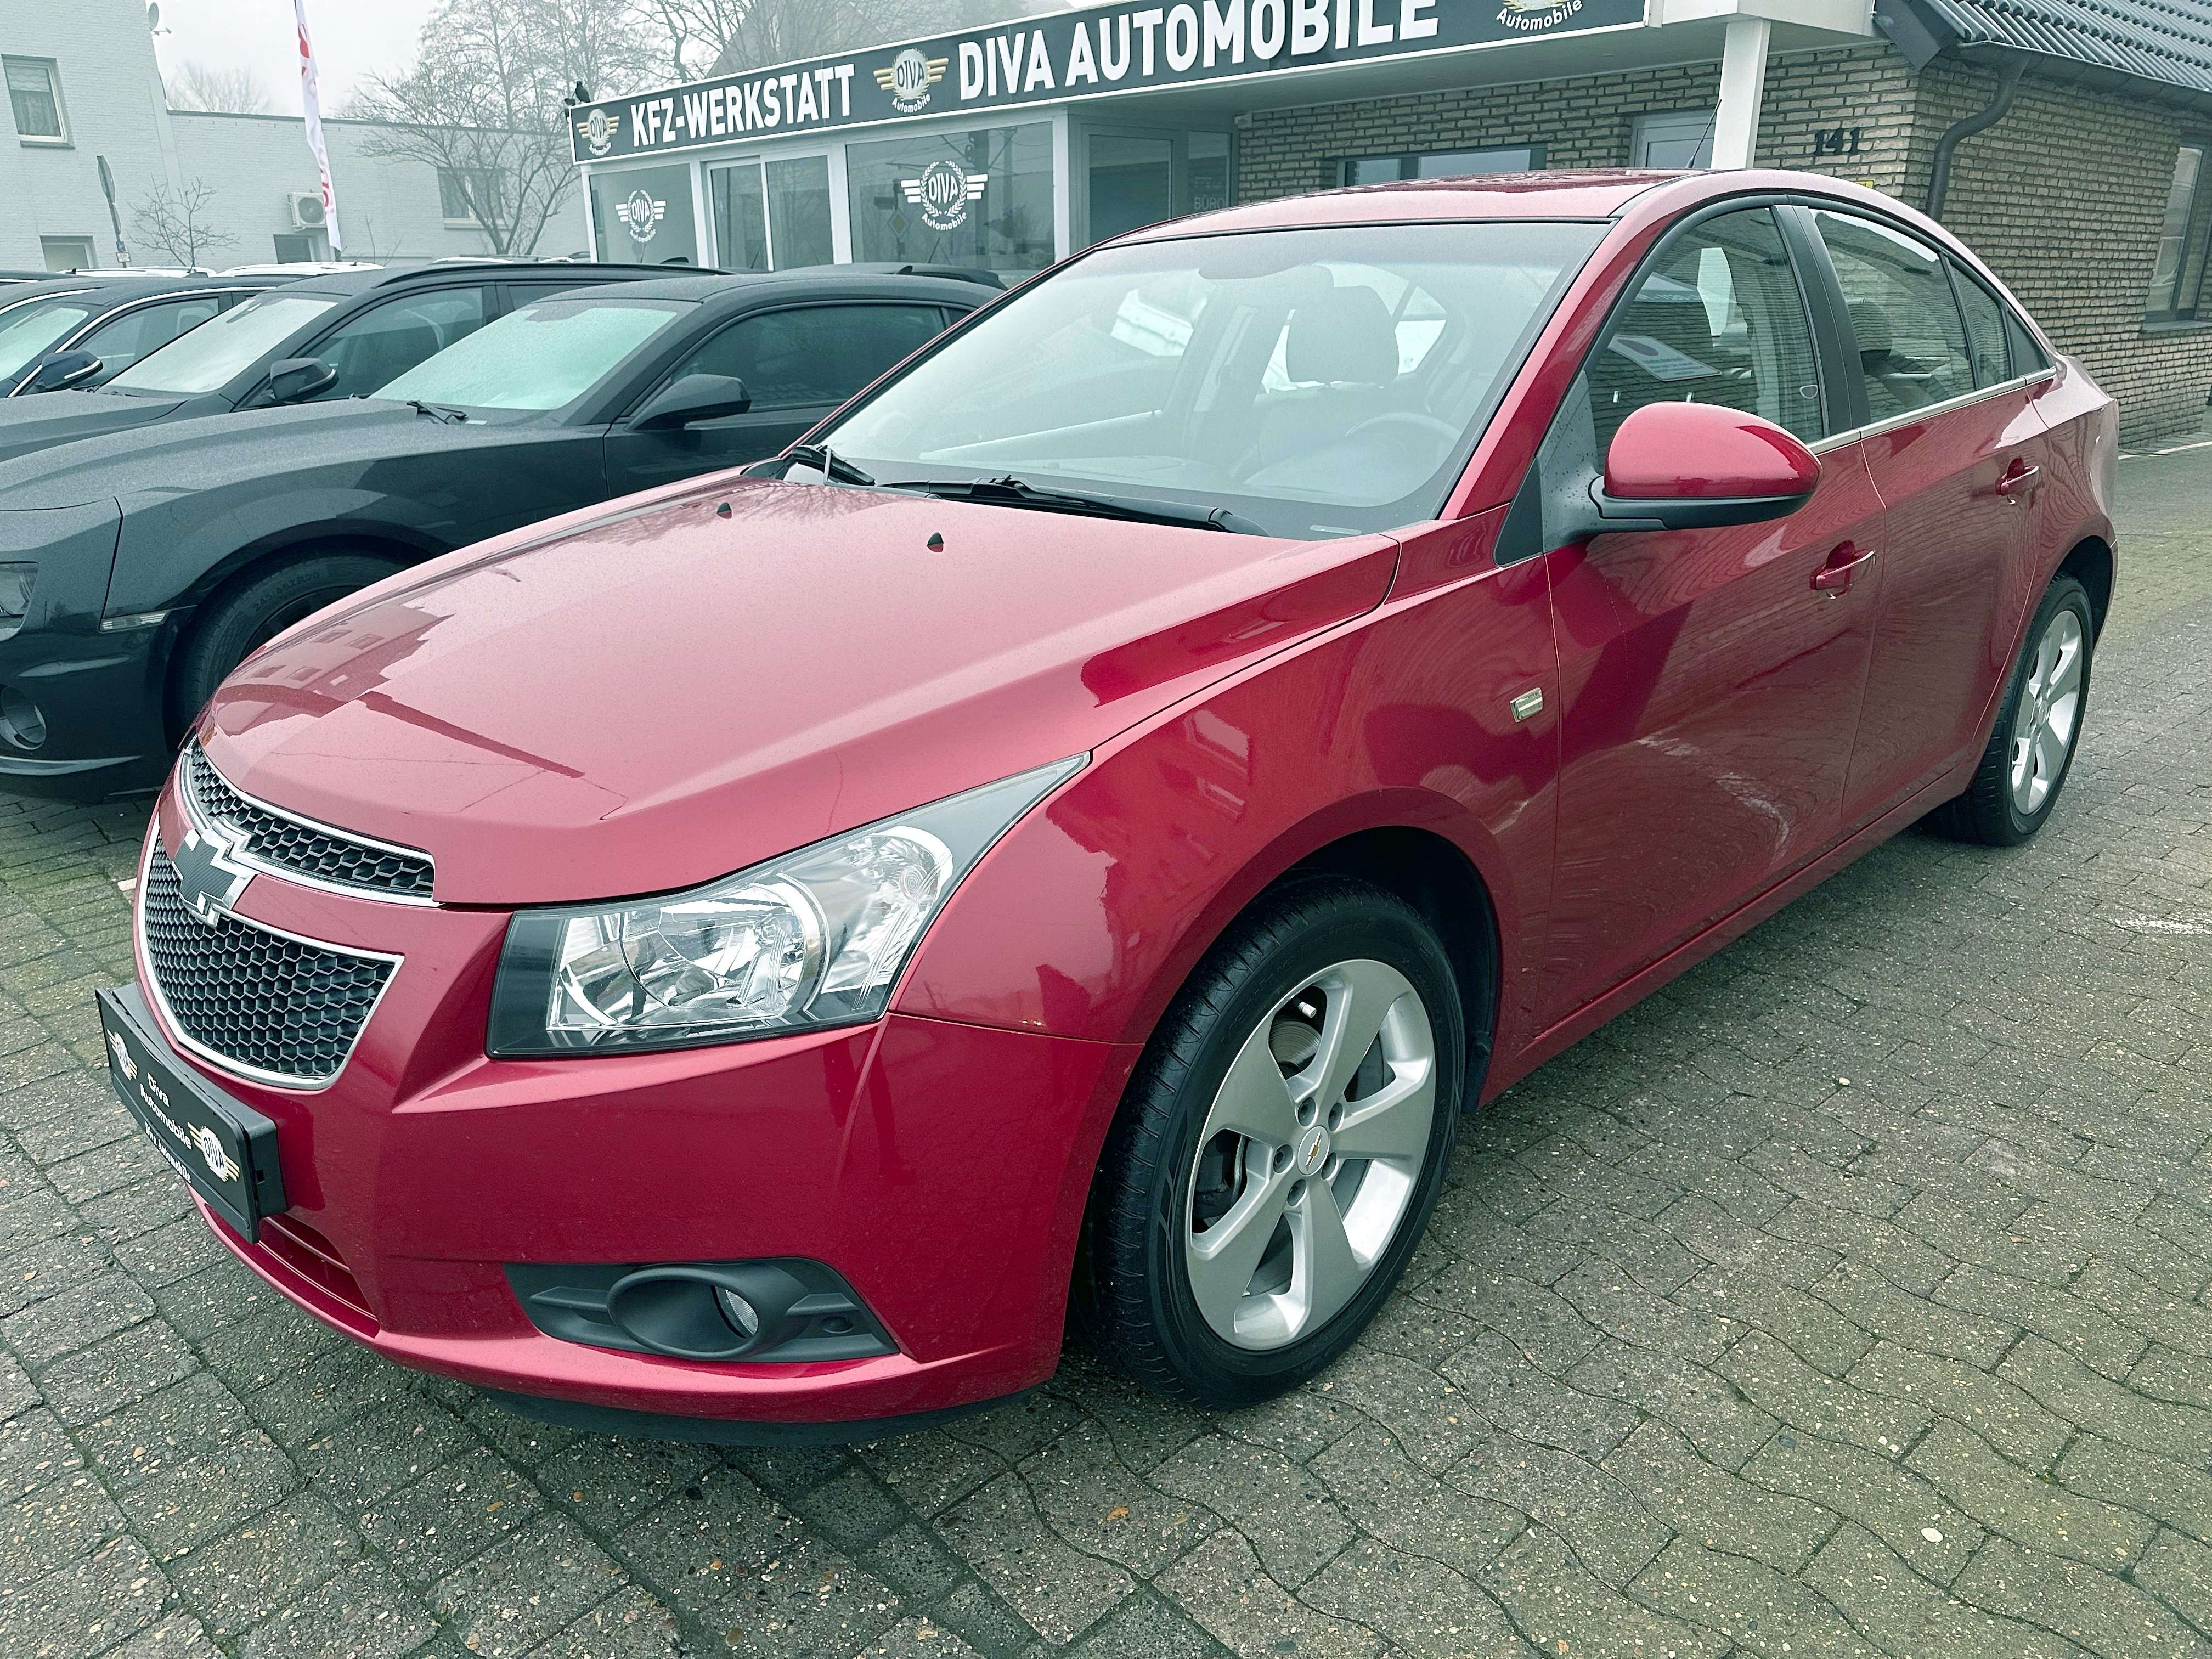 Chevrolet Cruze Sedan in Red used in Bielefeld for € 5,999.-